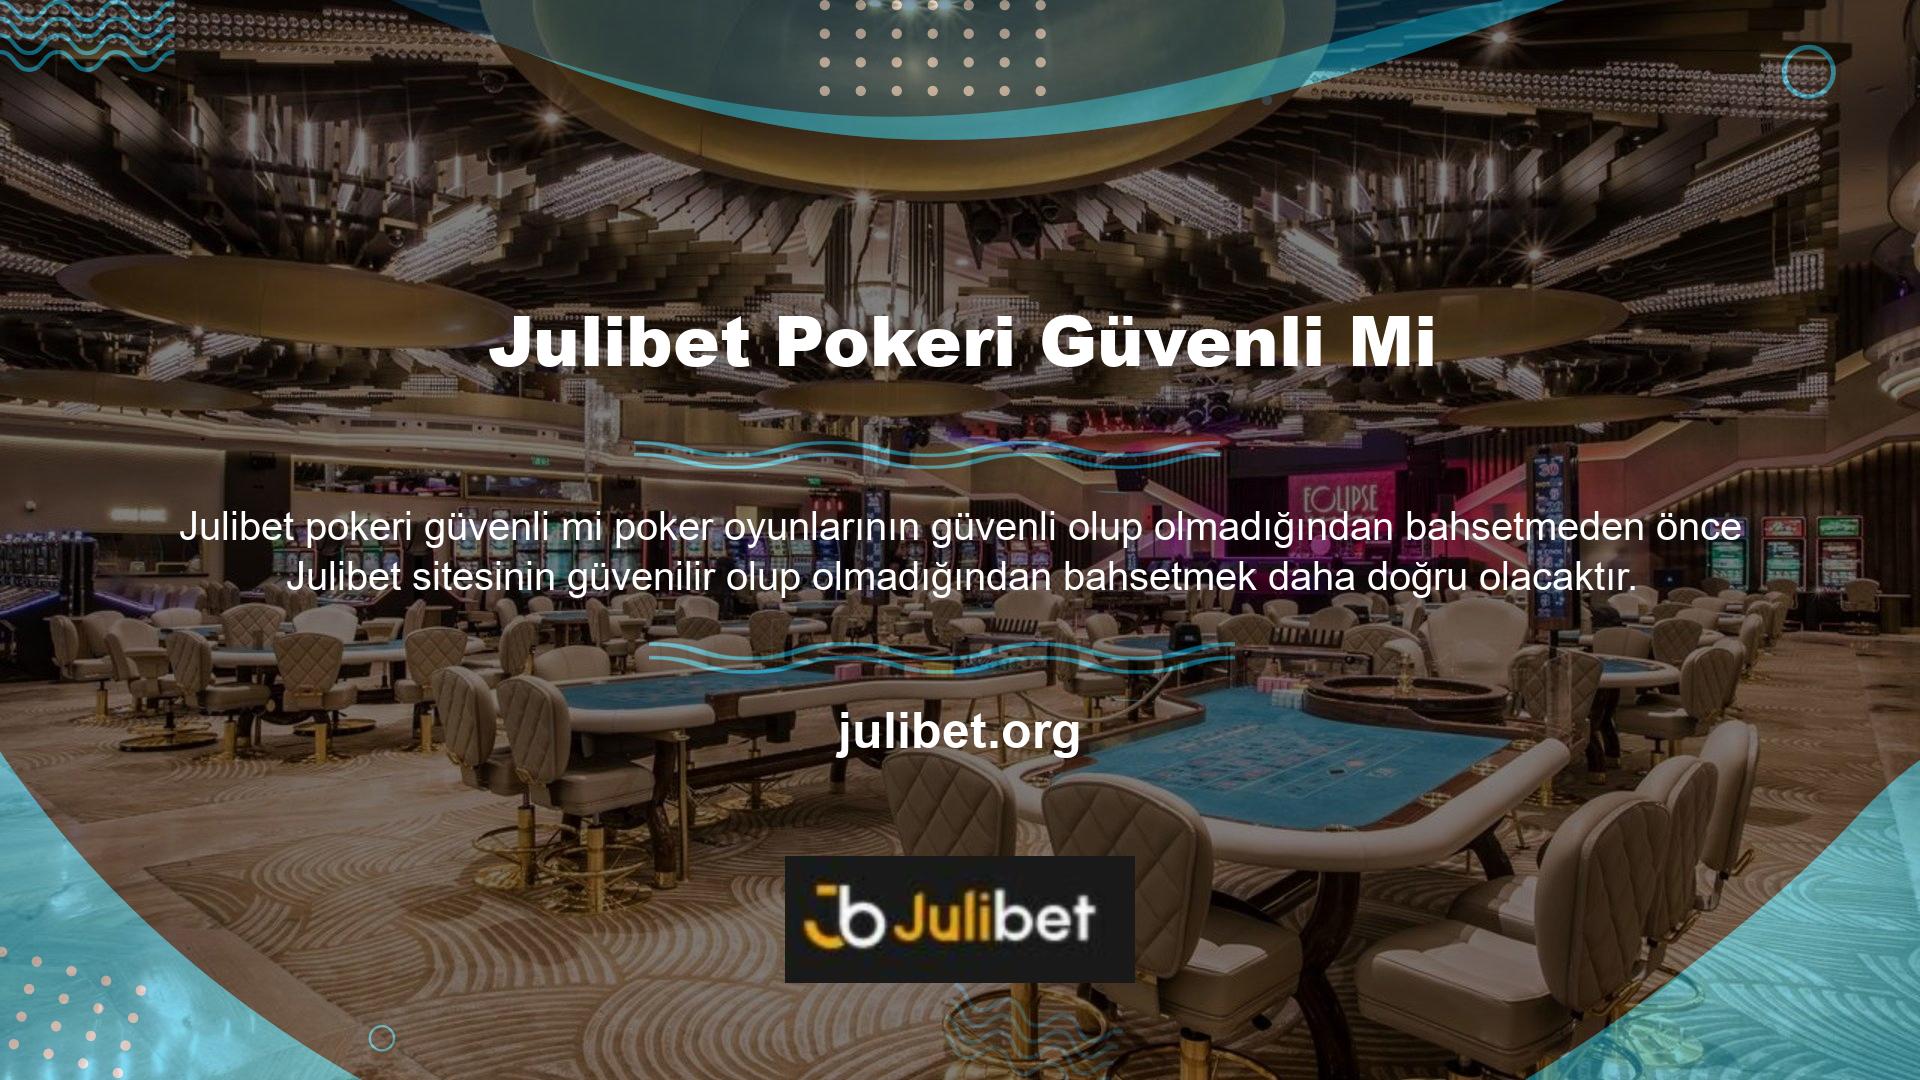 Bir Julibet pokeri güvenli mi bahis sitesinin bu konudaki güvenilirliği, sunduğu oyunları ve bahis seçeneklerini doğrudan etkiler